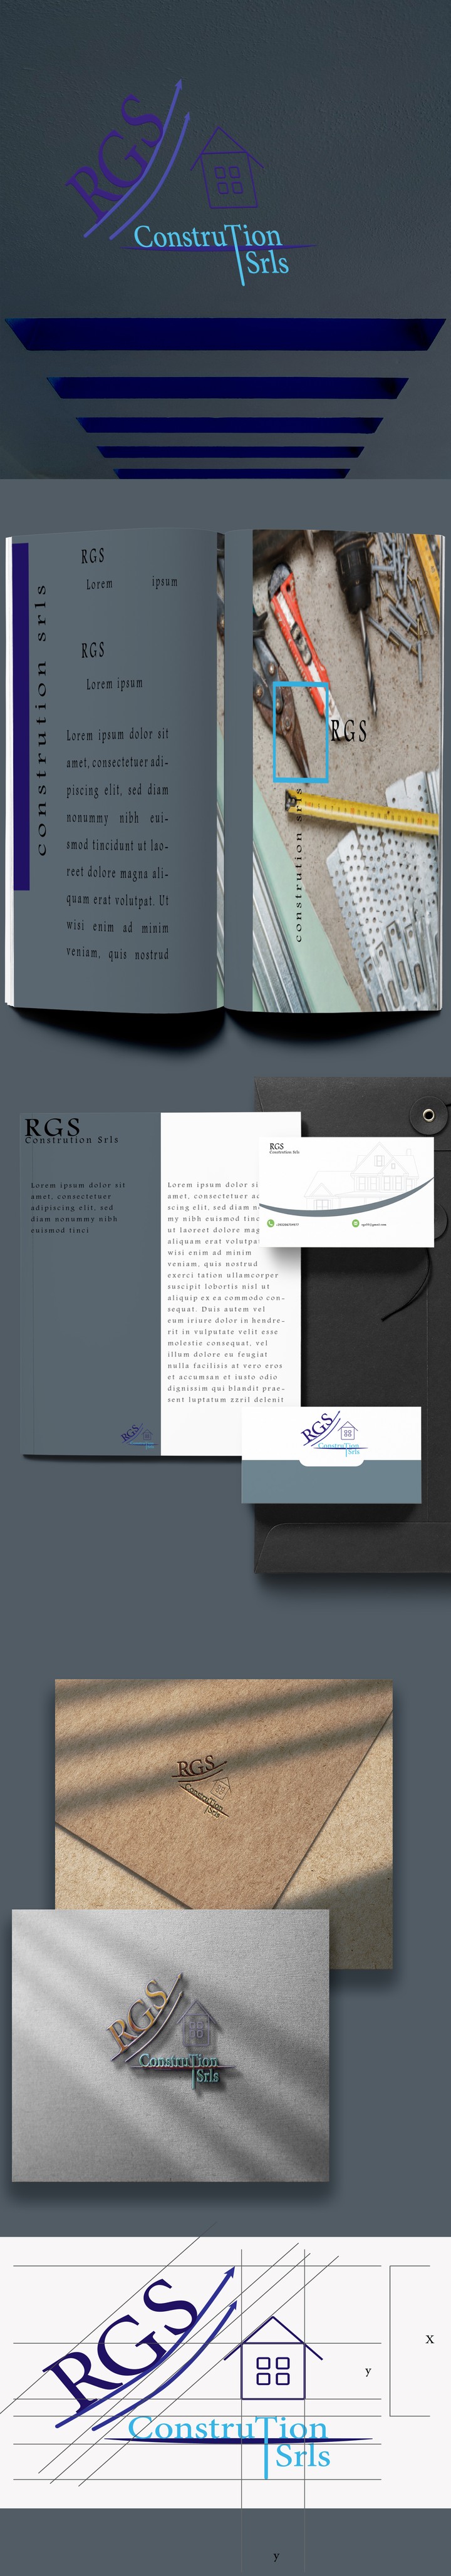 RGS logo